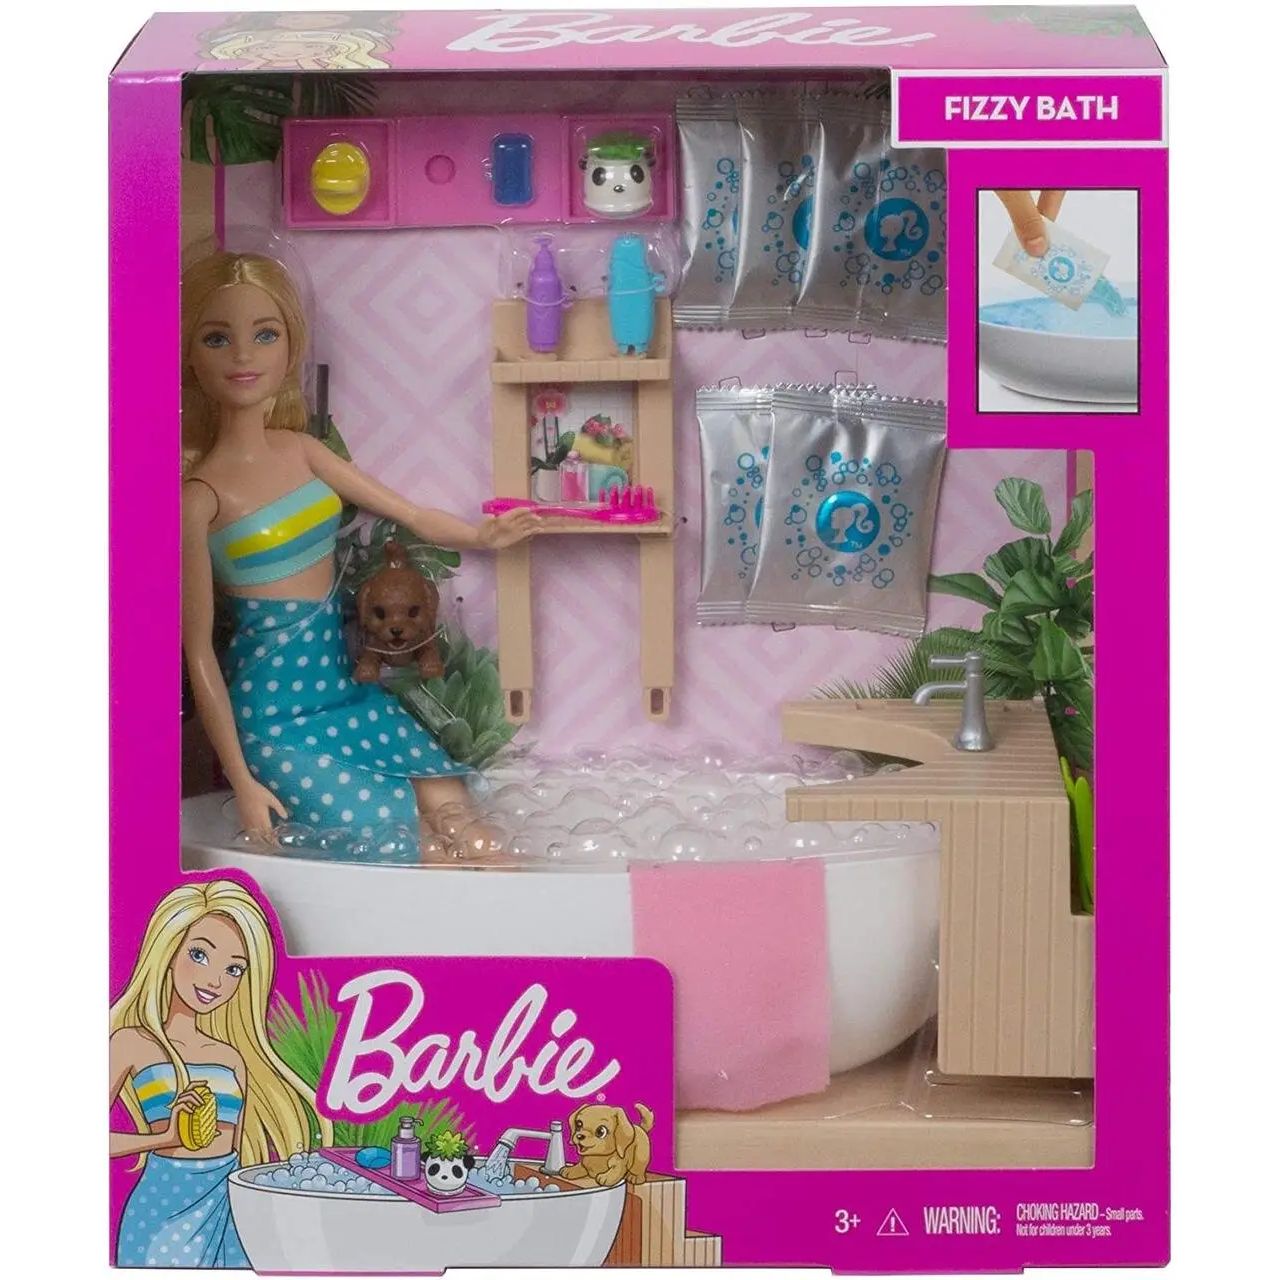 Игровой набор Barbie Fizzy Bath Doll&Playset, 28 см - фото 5